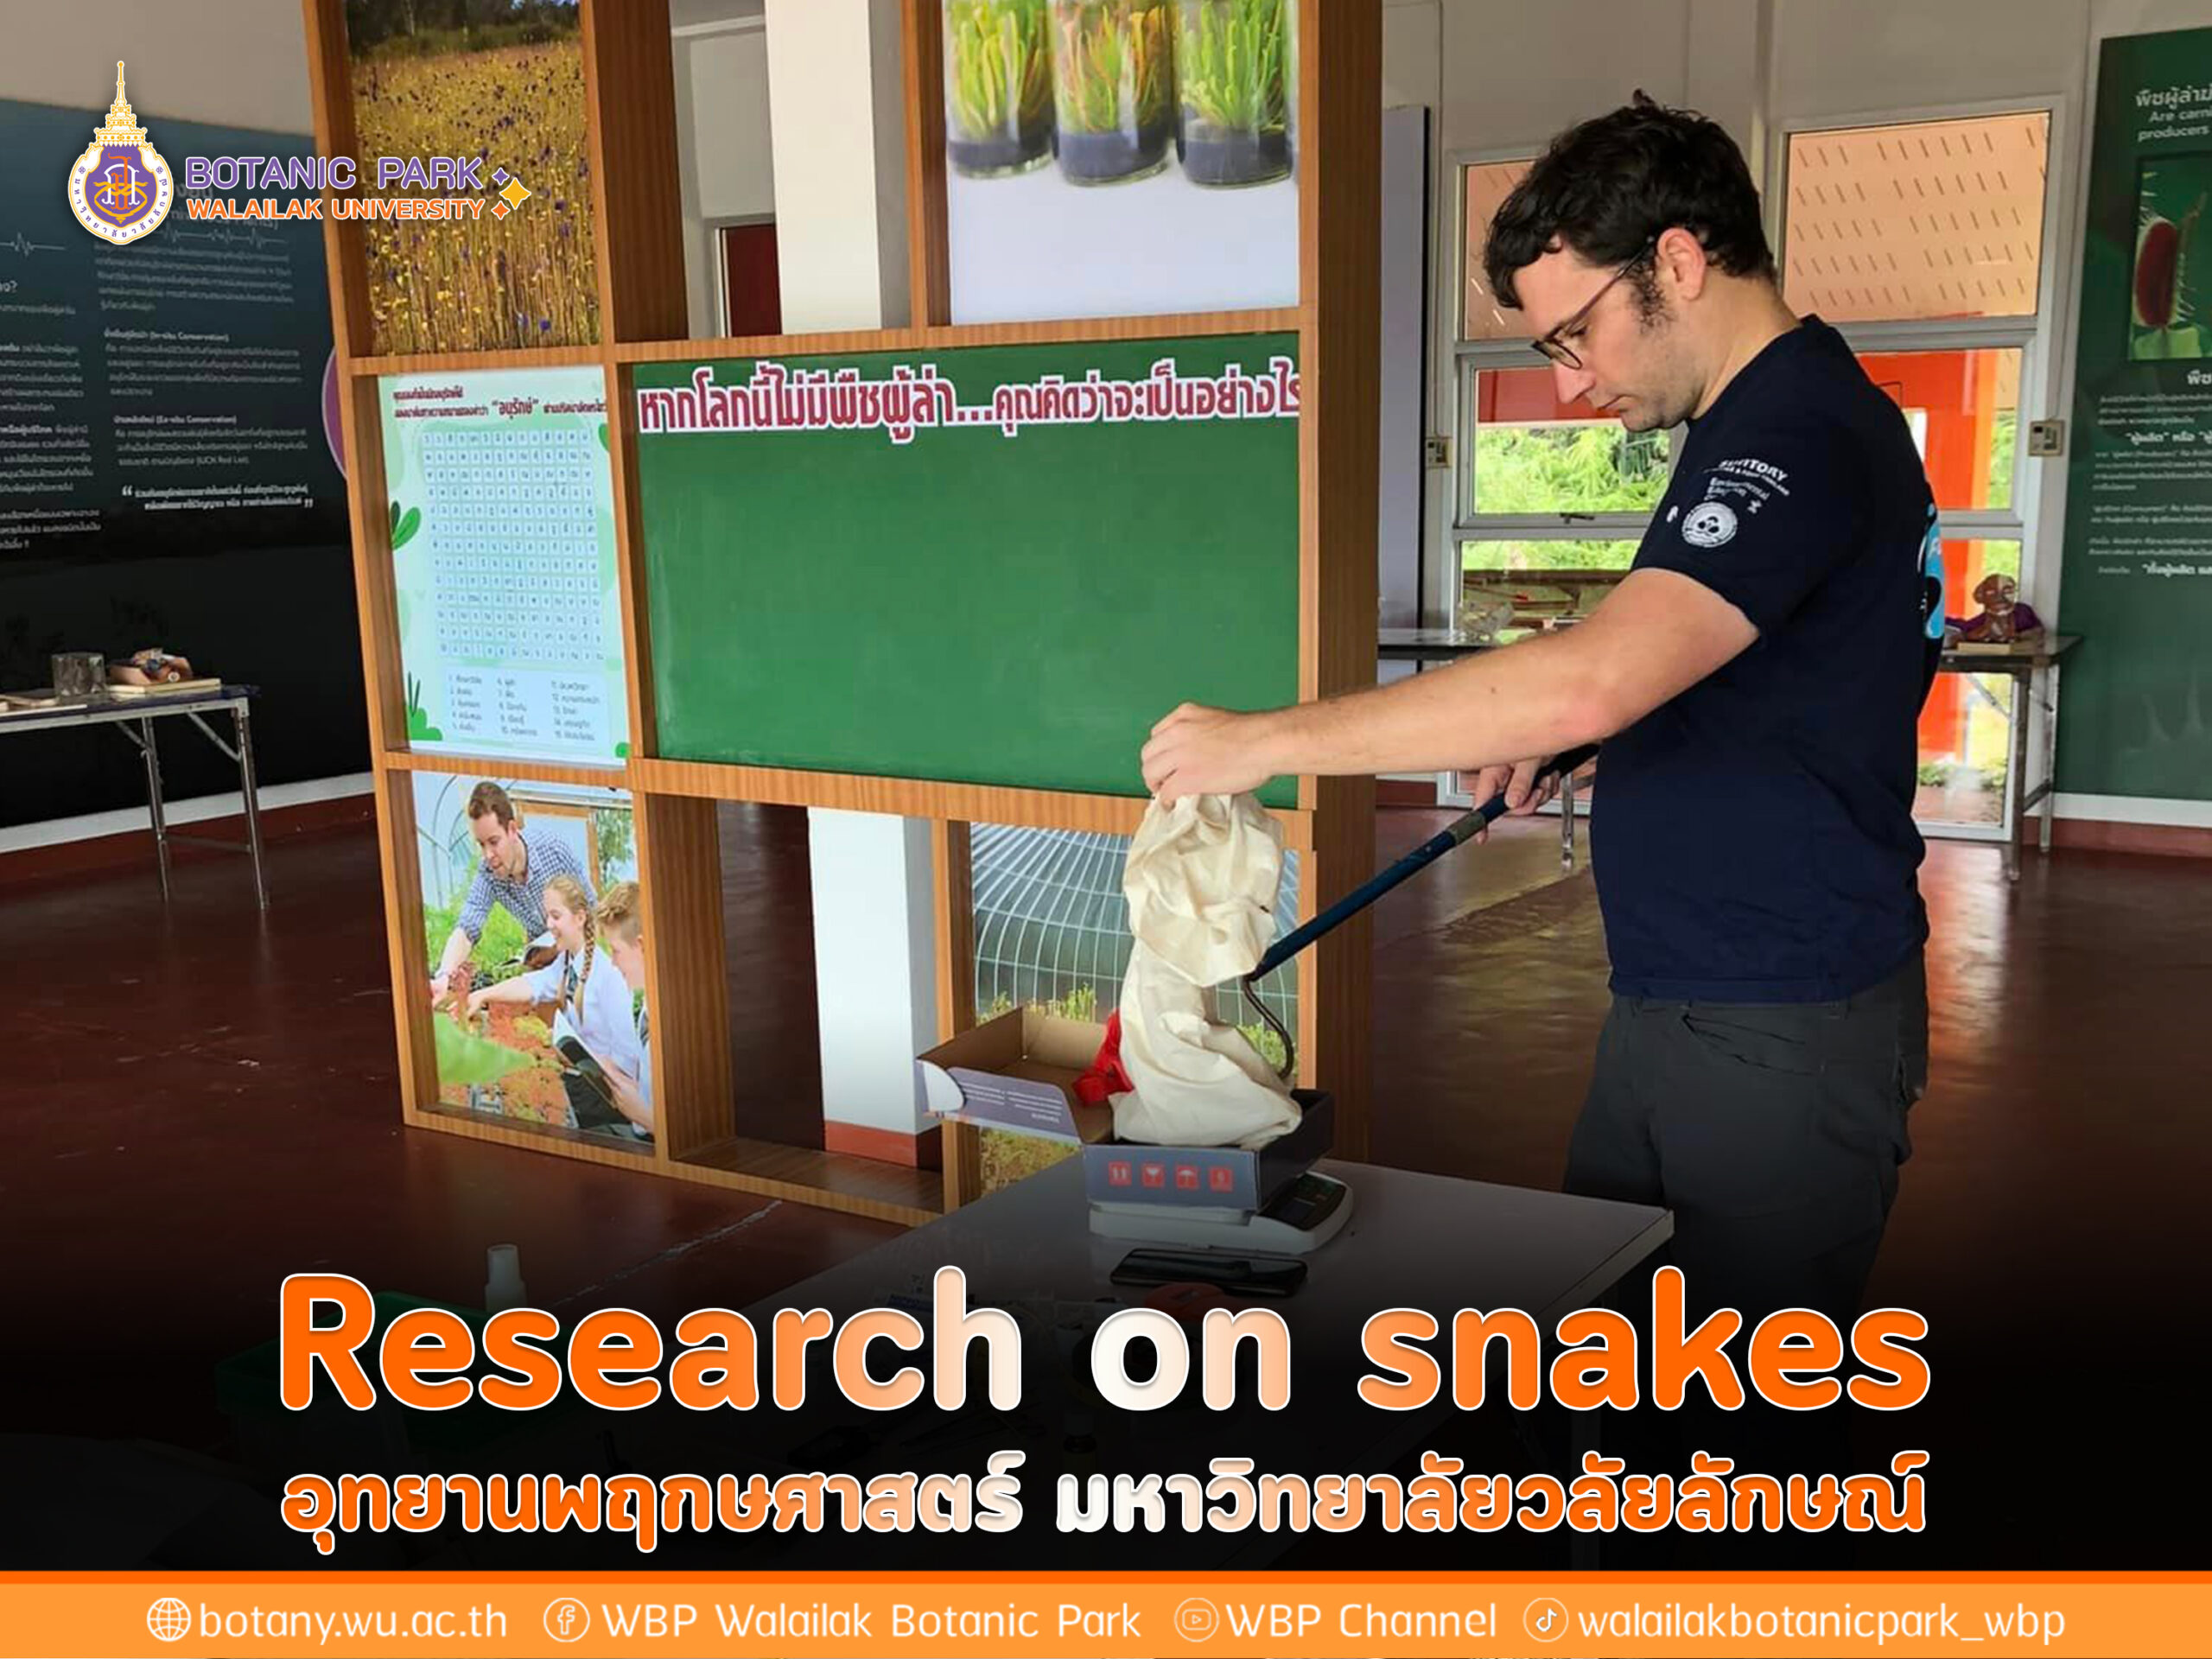 Research on snakes อุทยานพฤกษศาสตร์ มหาวิทยาลัยวลัยลักษณ์ นอจากเป็นแหล่งท่องเที่ยว แหล่งเรียนรู้ ยังเป็นแหล่งศึกษาวิจัย